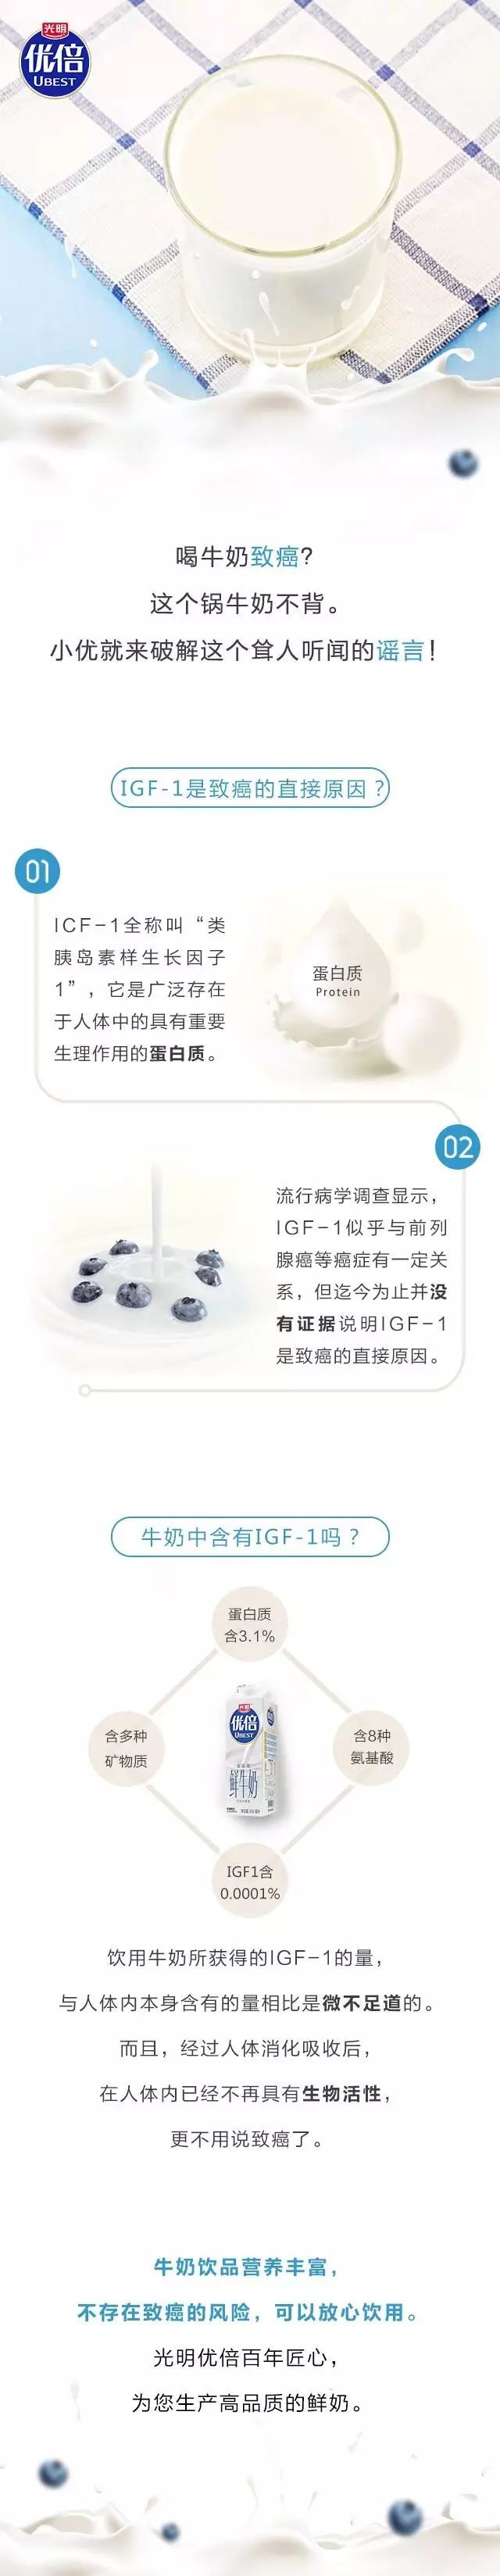 【9月22日】新鲜教育丨牛奶中含有激素物质IGF-1，喝了会致癌？.jpg